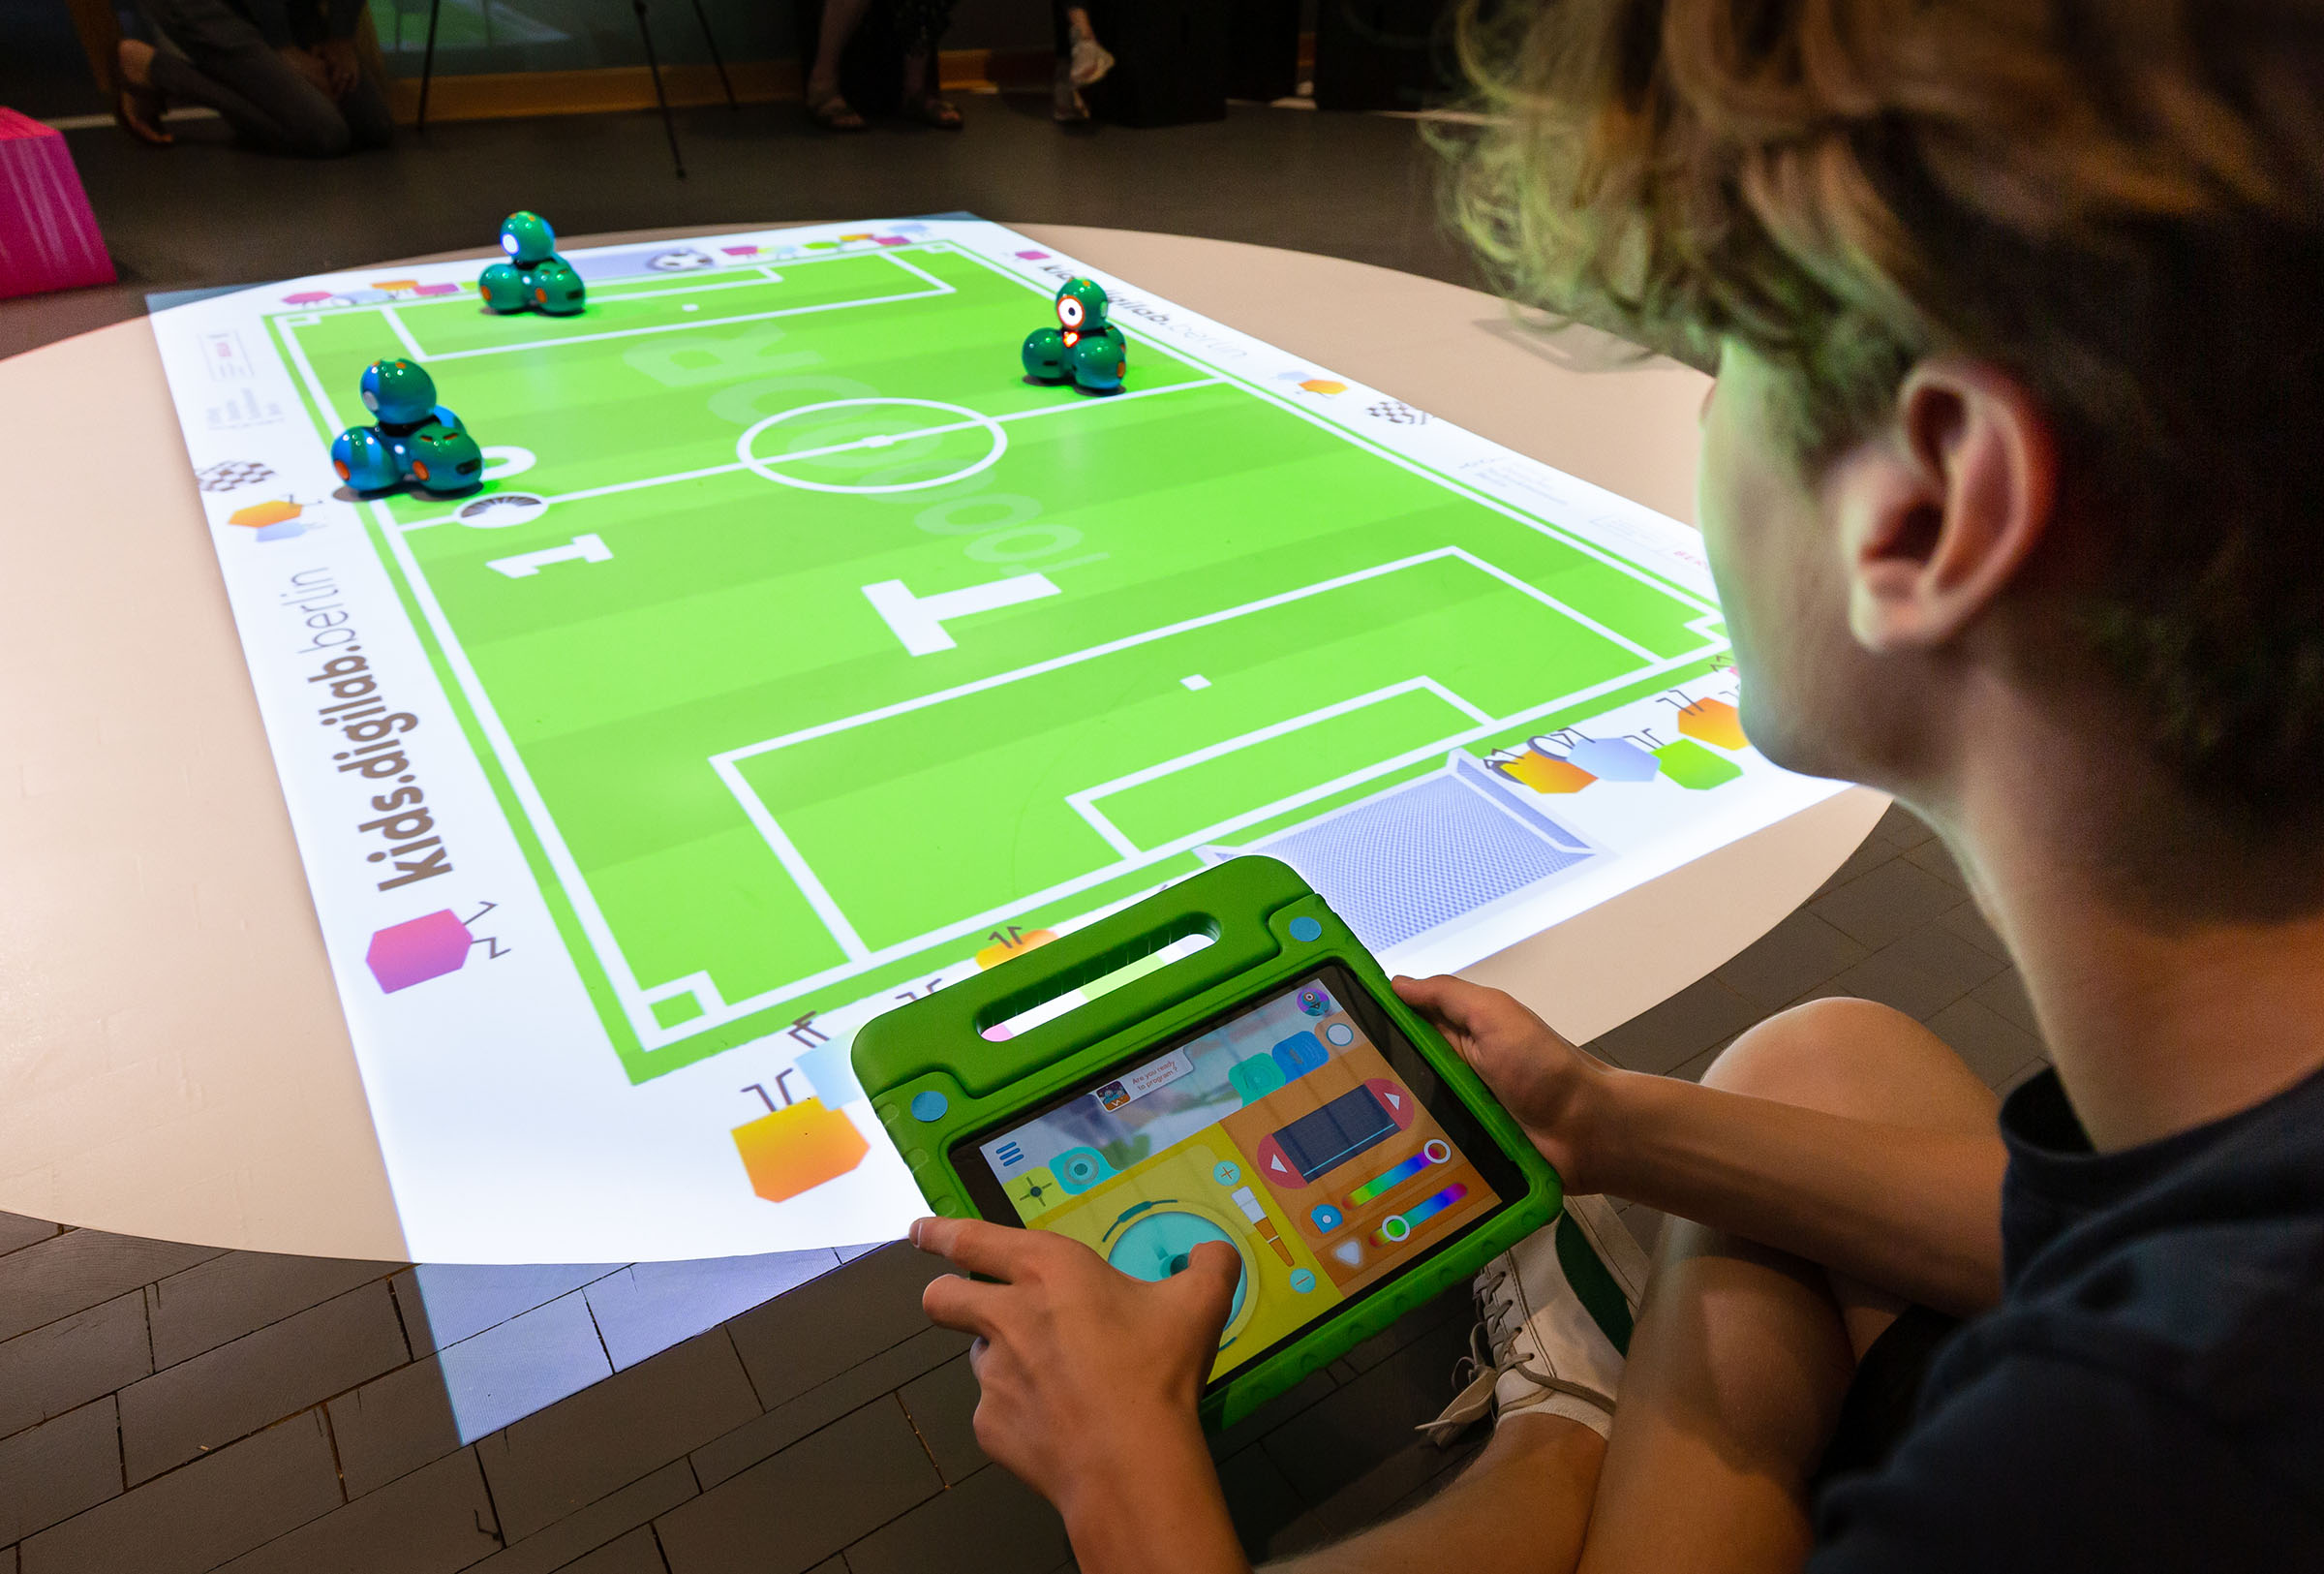 Drei Dash-Roboter spielen auf einem projizierten Fußballfeld Fußball. Ein Kind steuert mit Tablet einen Roboter.